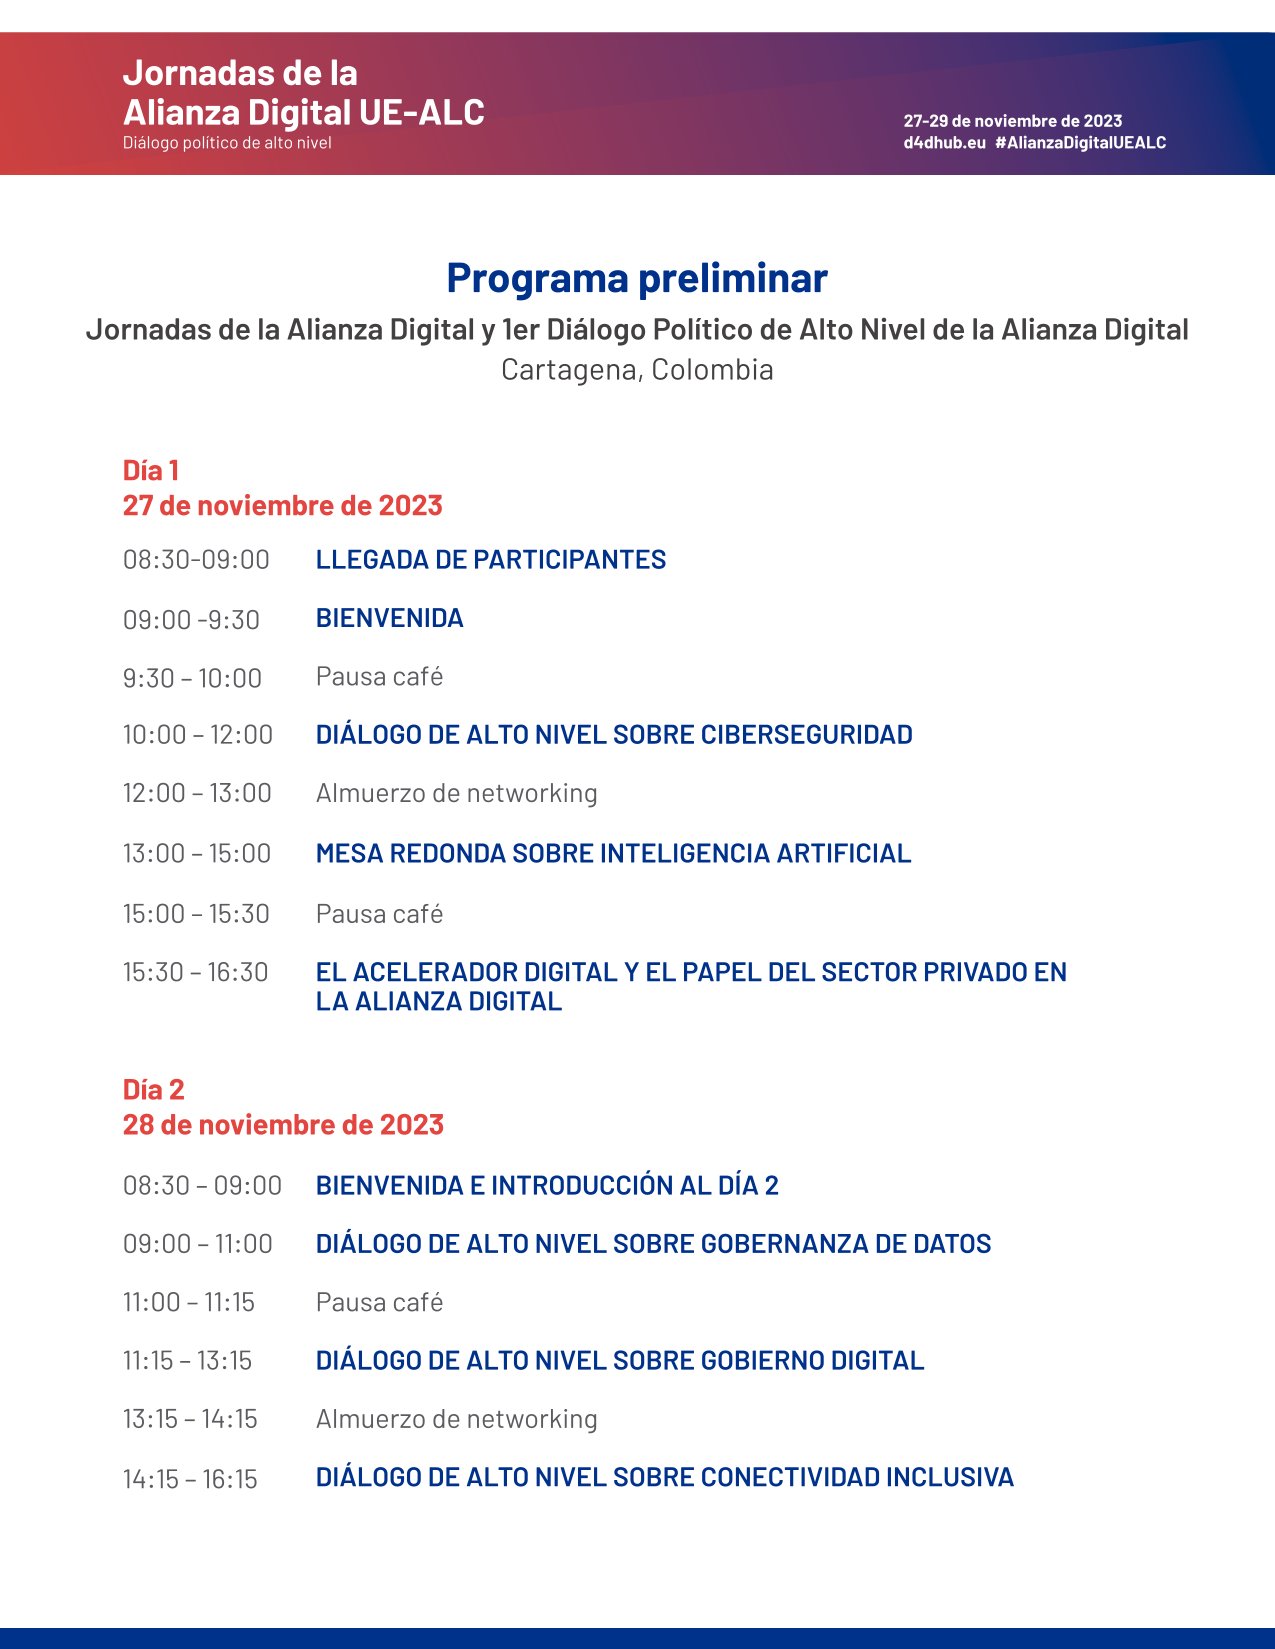 Jornadas Alianza Digital UE-ALC, Cartagena, Colombia, 27-29 de noviembre de 2023 – Agenda